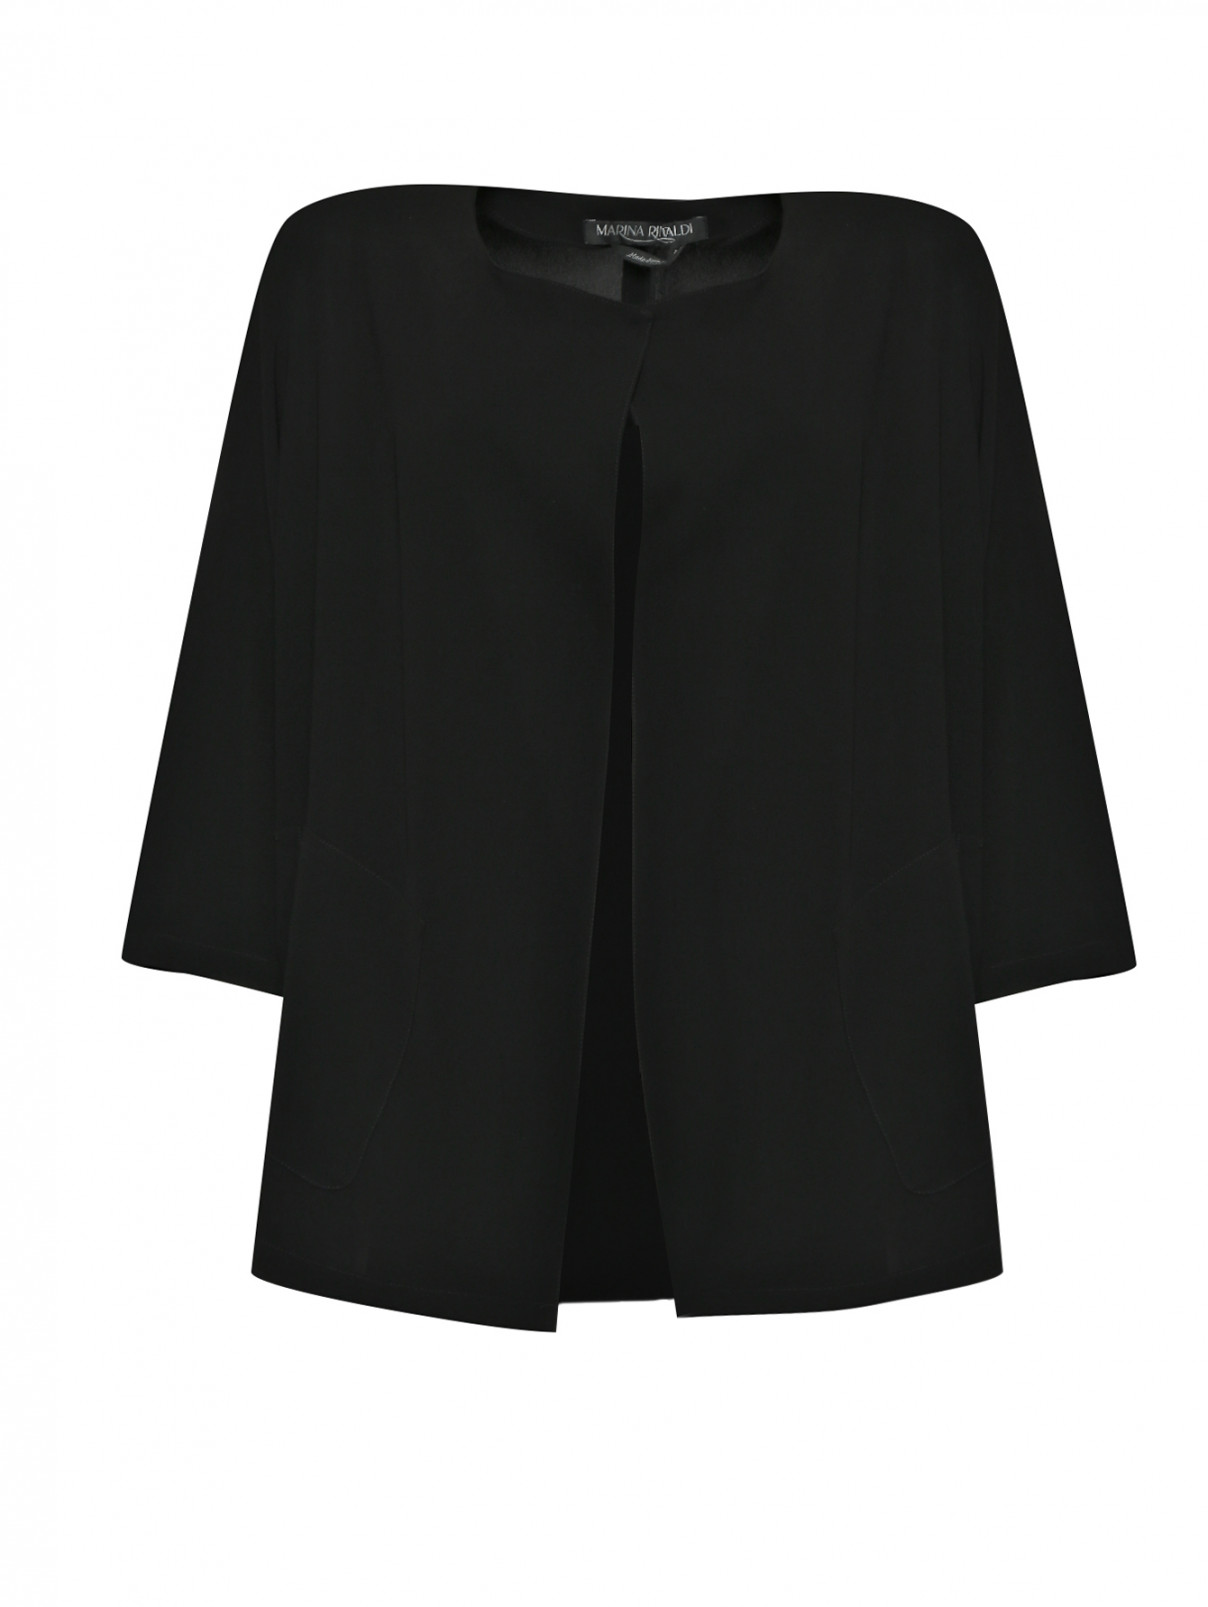 Жакет с накладными карманами Marina Rinaldi  –  Общий вид  – Цвет:  Черный